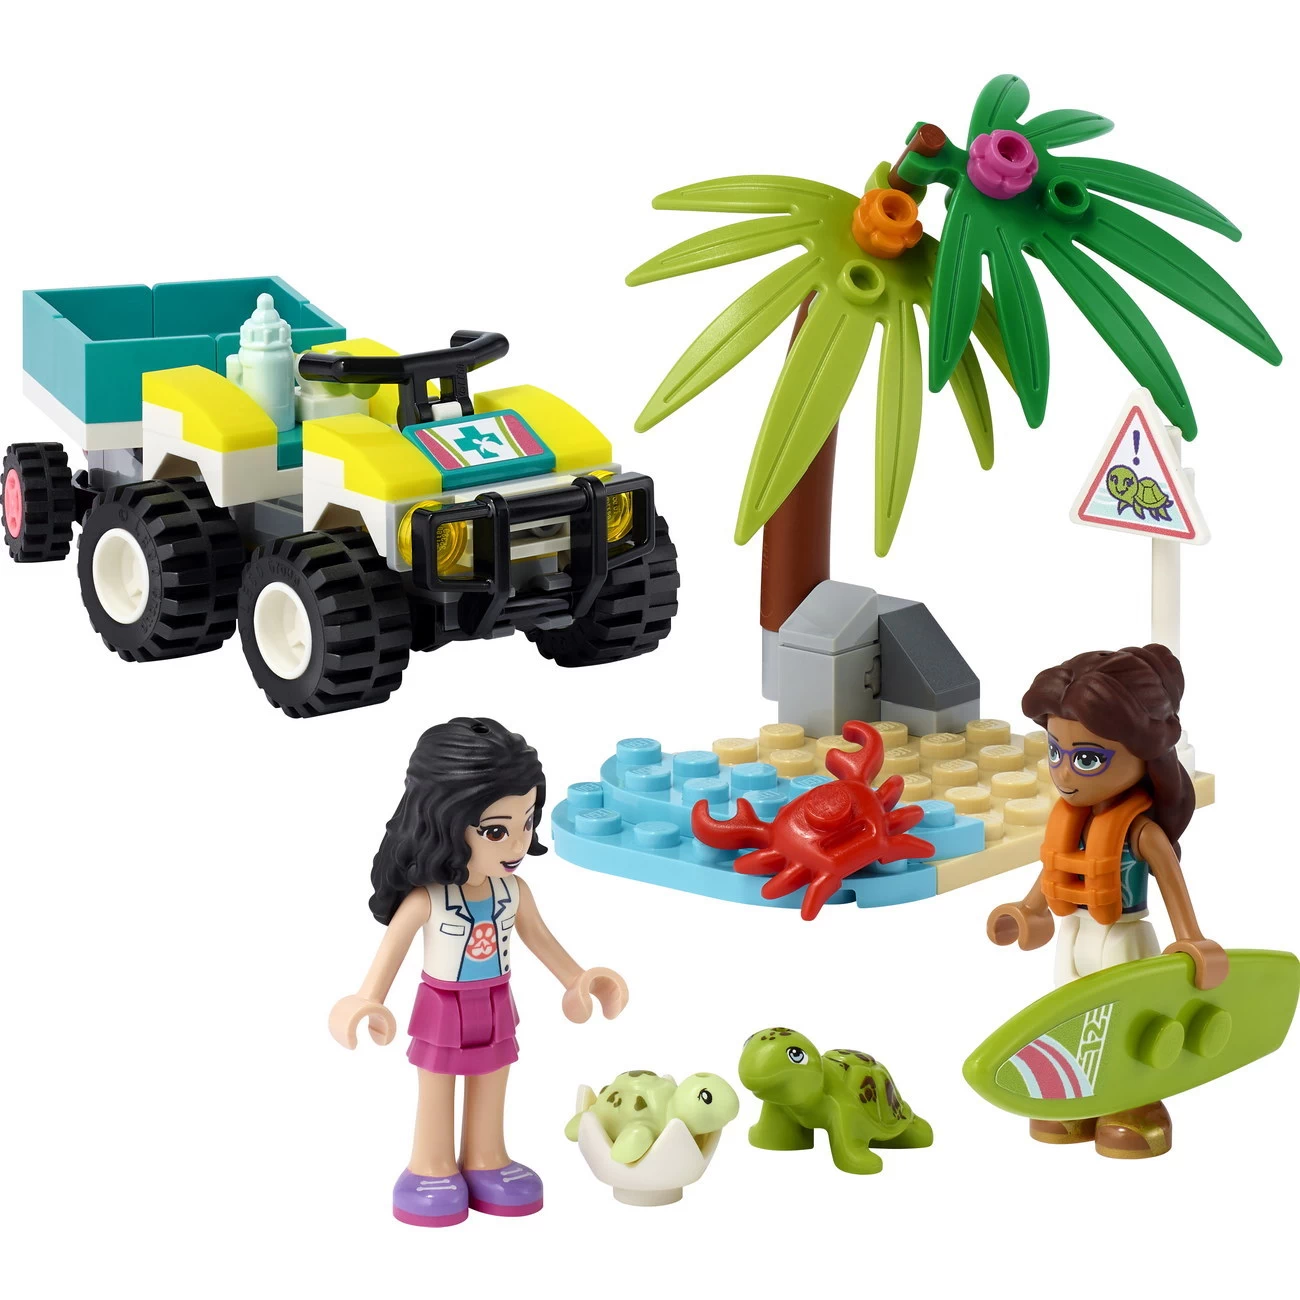 LEGO Friends 41697 - Schildkröten-Rettungswagen